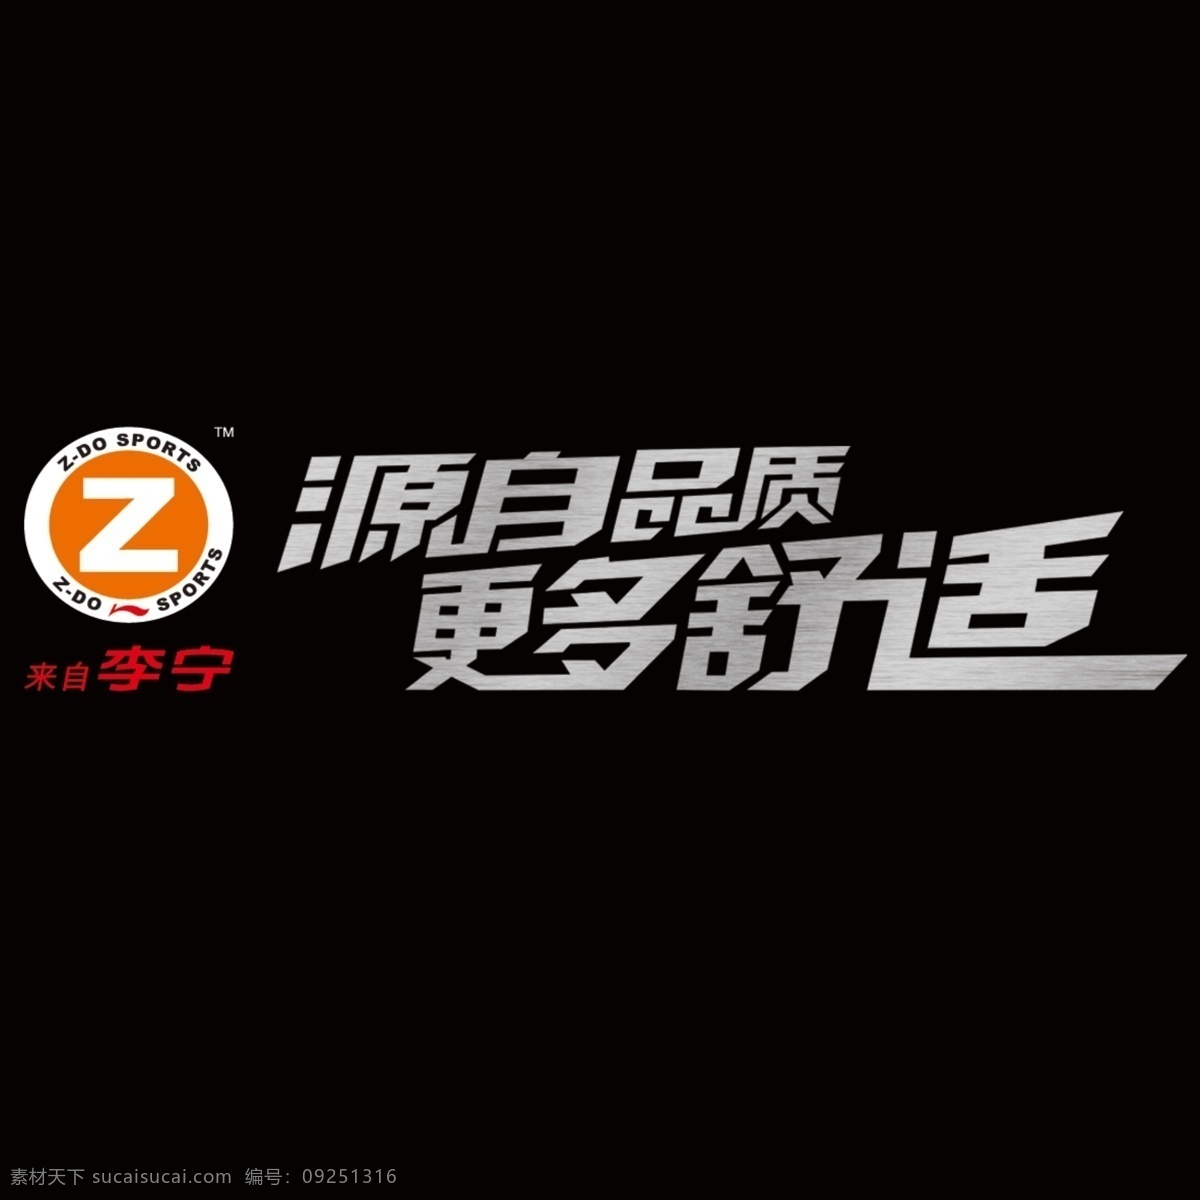 李宁 logo 分层 源文件 模板下载 李宁logo psd源文件 logo设计